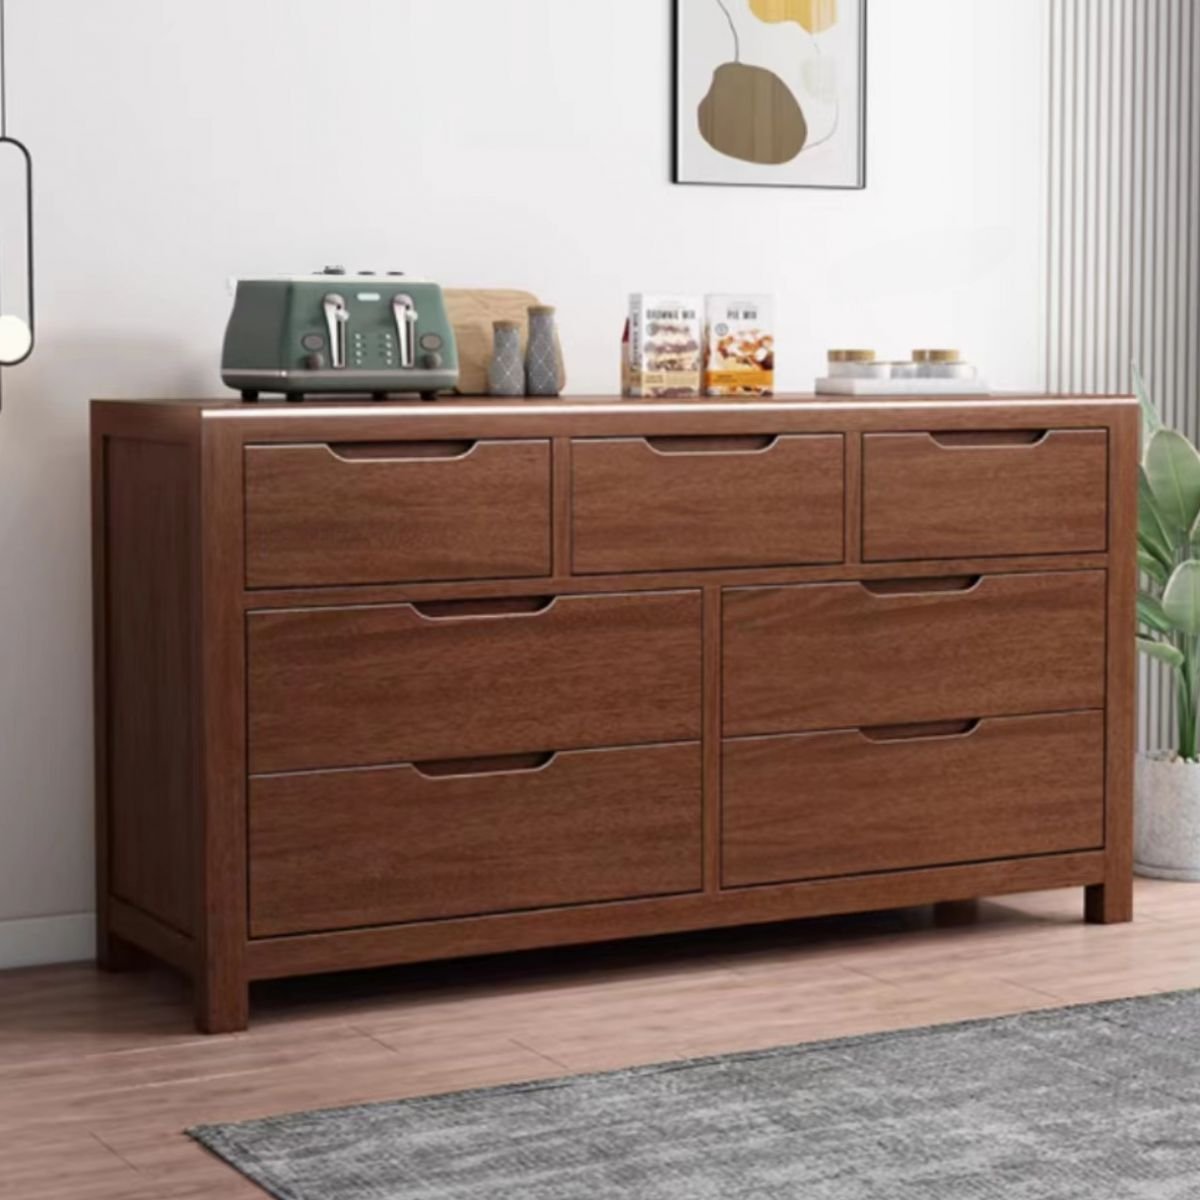 Casual Double Dresser Walnut Wood Horizontal with 7 Drawers, Walnut, 47"L x 18"W x 30"H